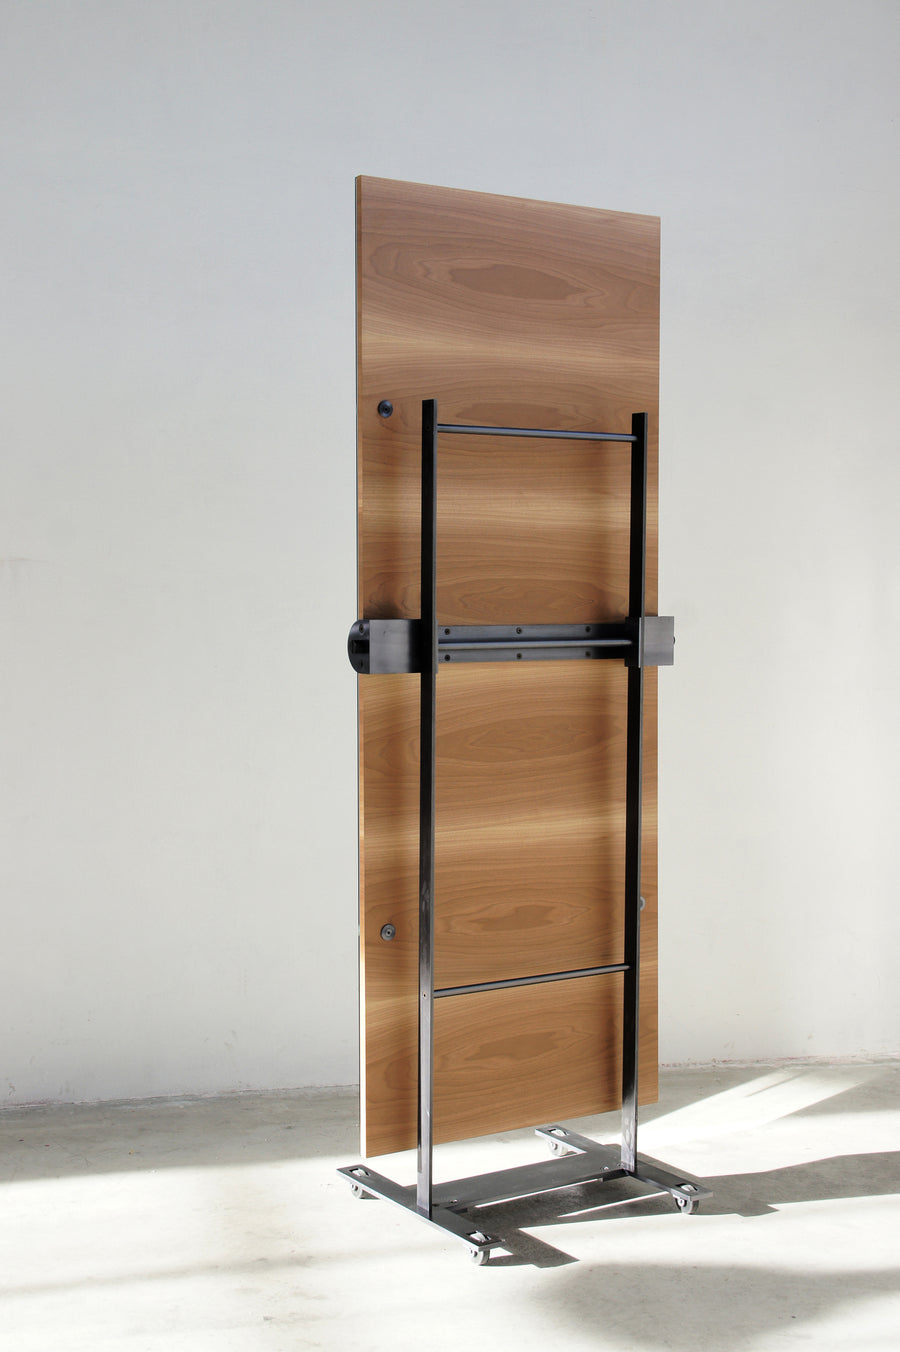 ASAS Self-Standing Castored Floor Mirror by Jaume Tresserra for Dessie - DUPLEX DESIGN